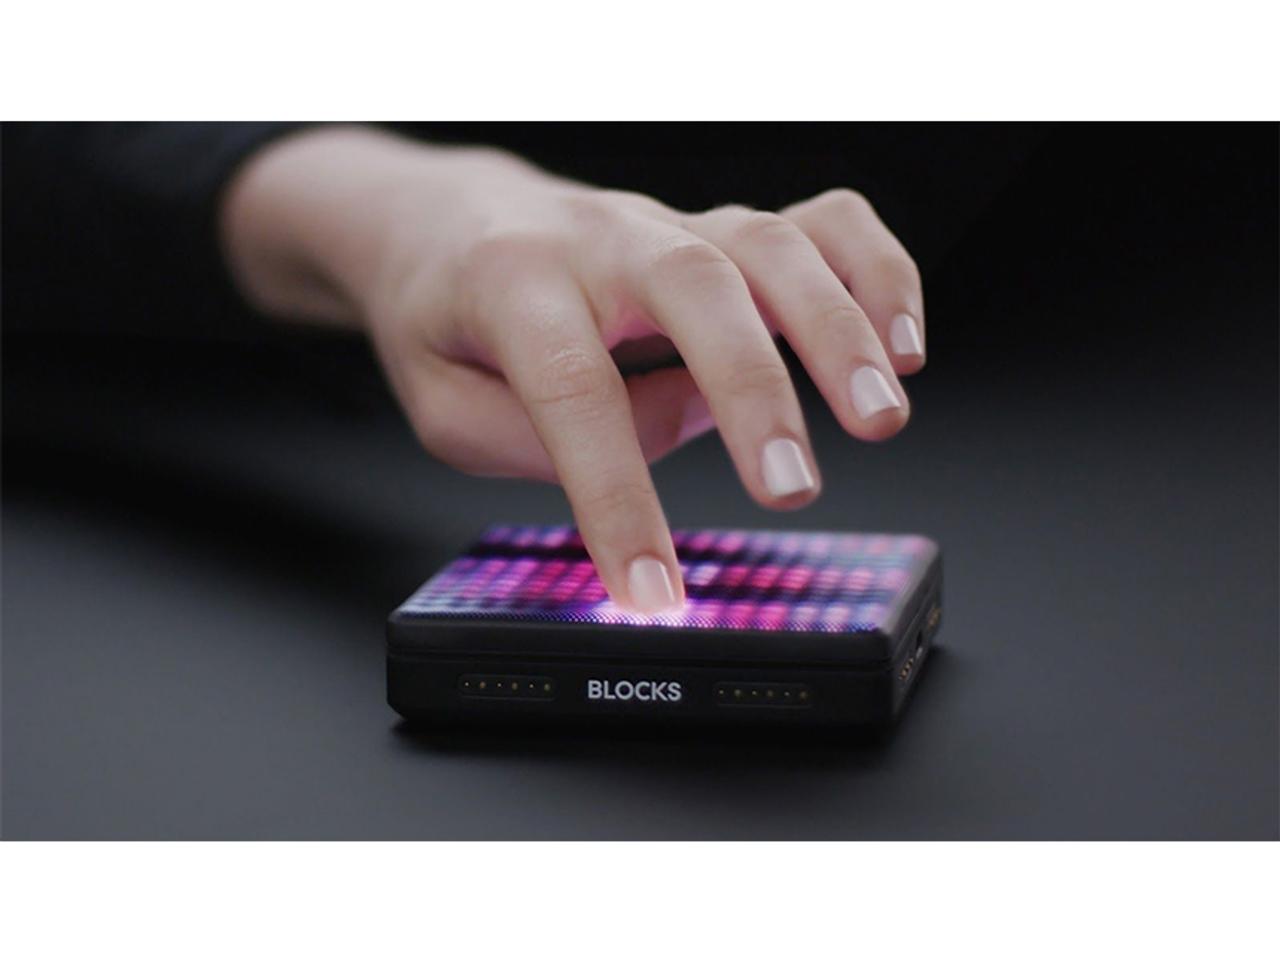 モジュール式楽器デバイス｢ROLI Blocks｣から、触覚フィードバックを追加した新モデル｢Lightpad Block M｣が登場